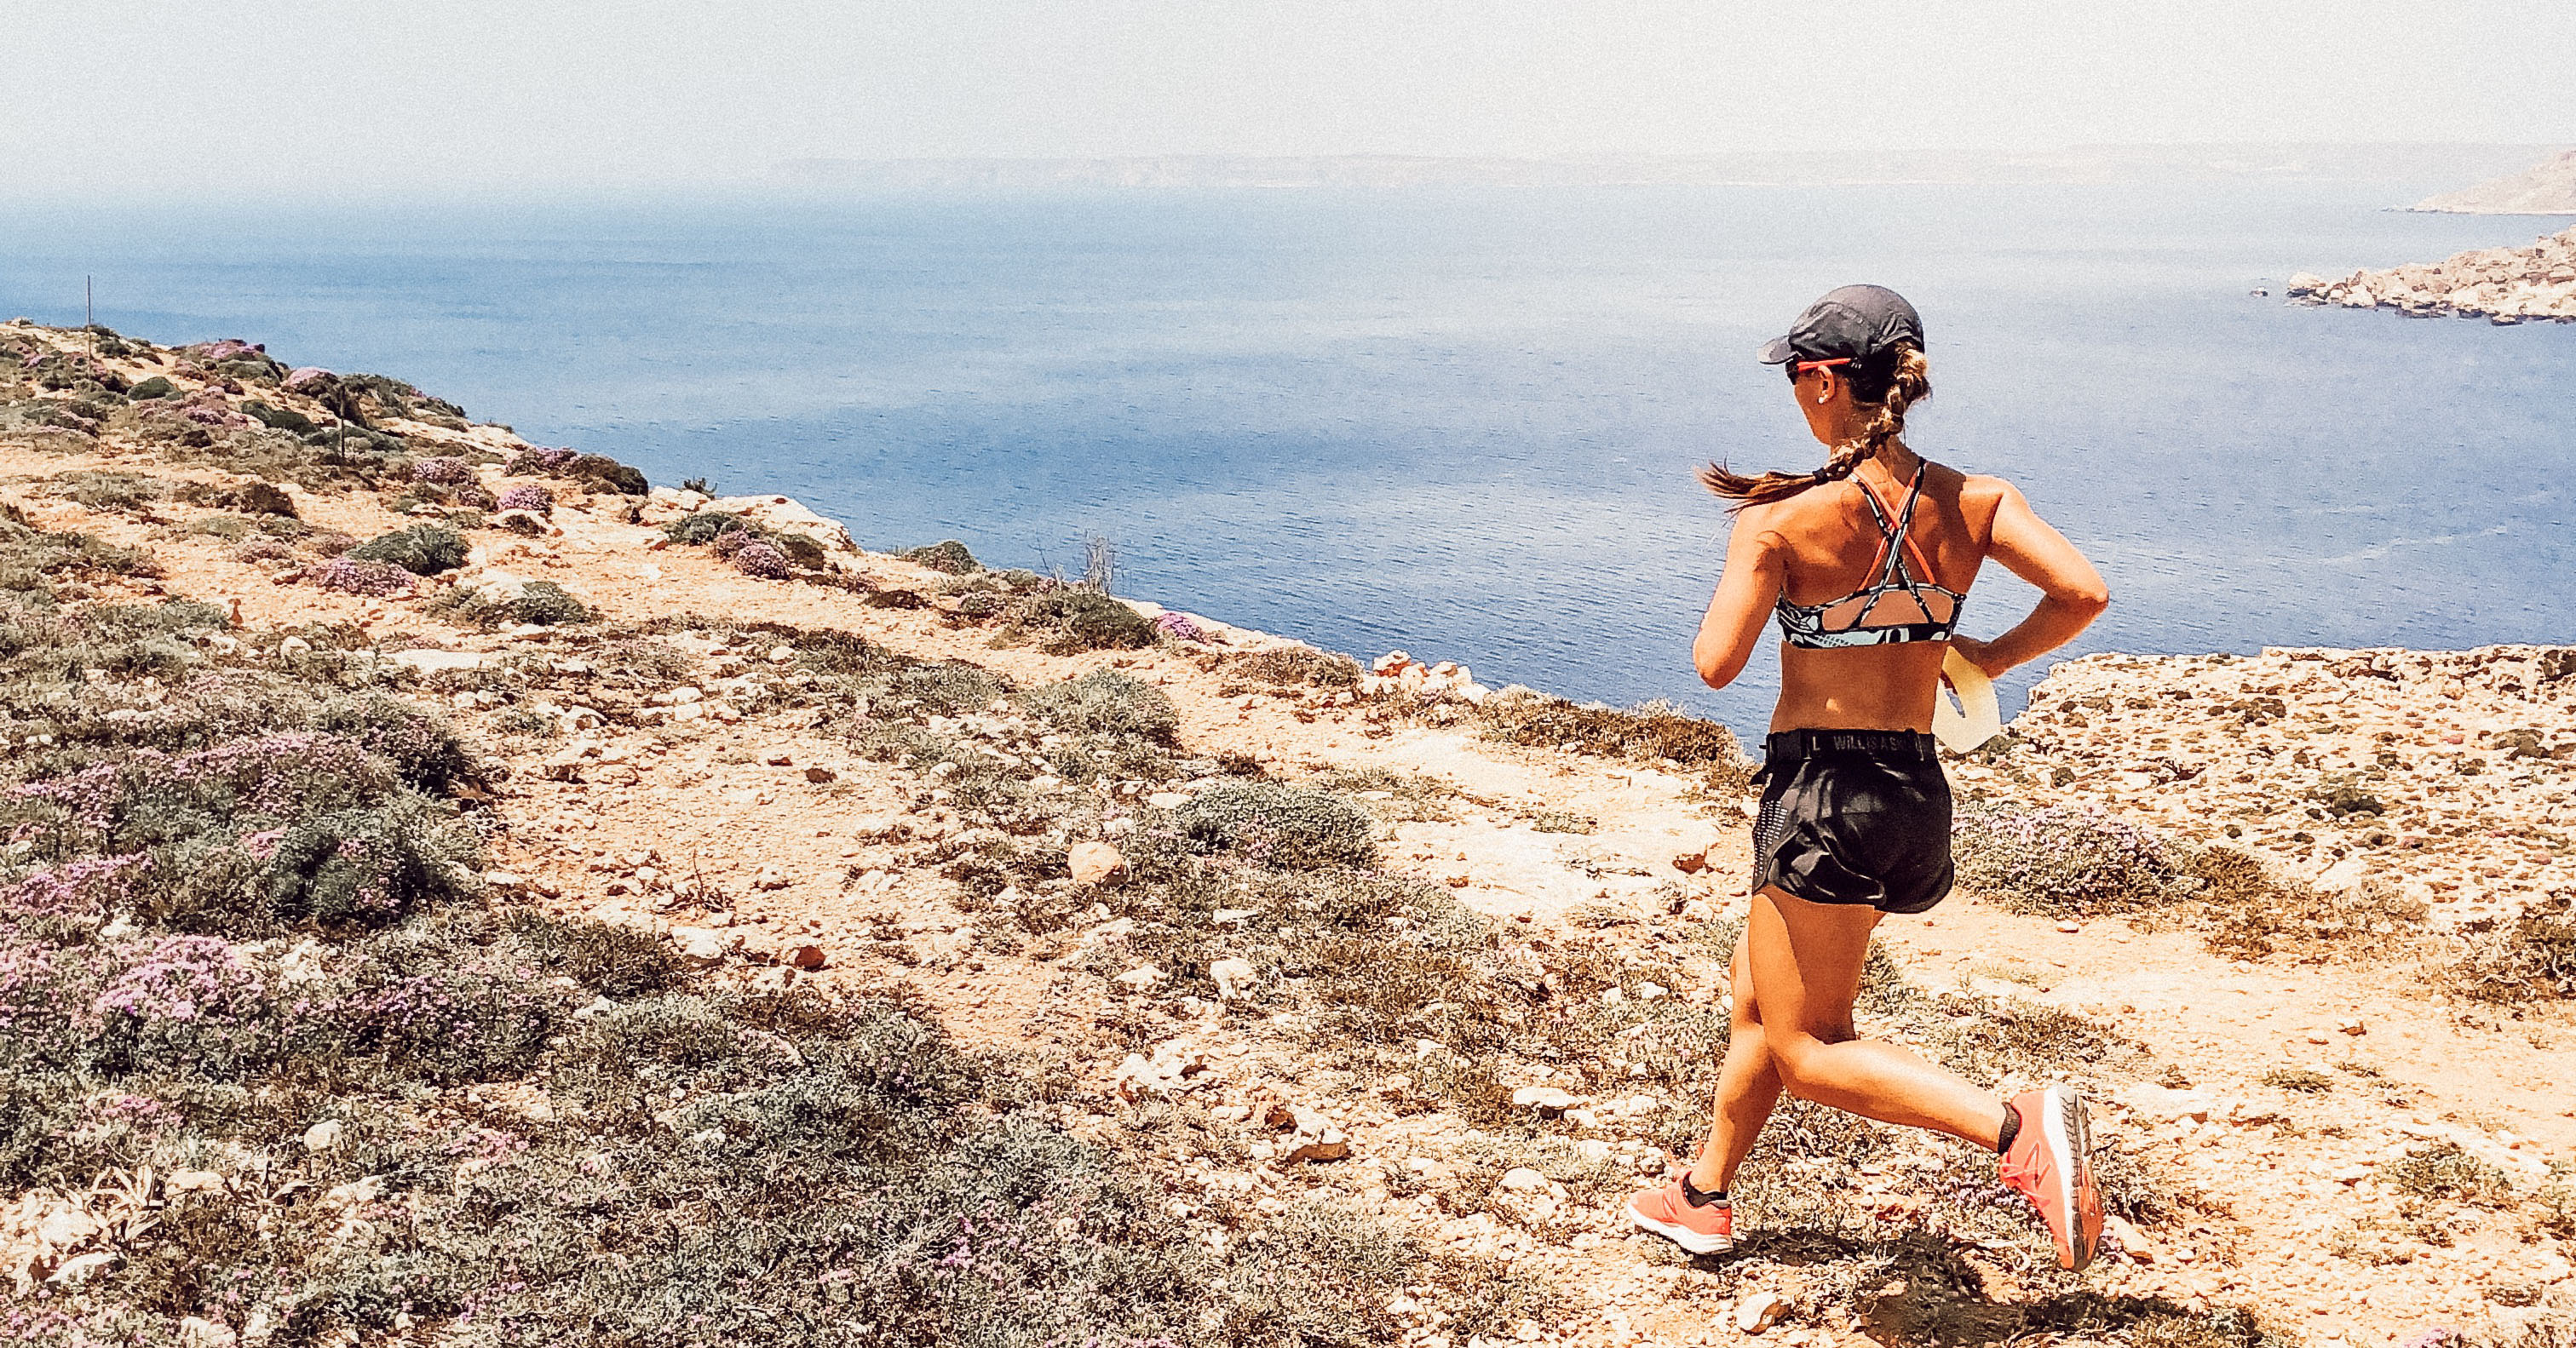 Correndo em Malta - Descubra as 6 estradas de corrida favoritas de Malta Atleta Satarano na ilha's 6 favourite running routes on the island